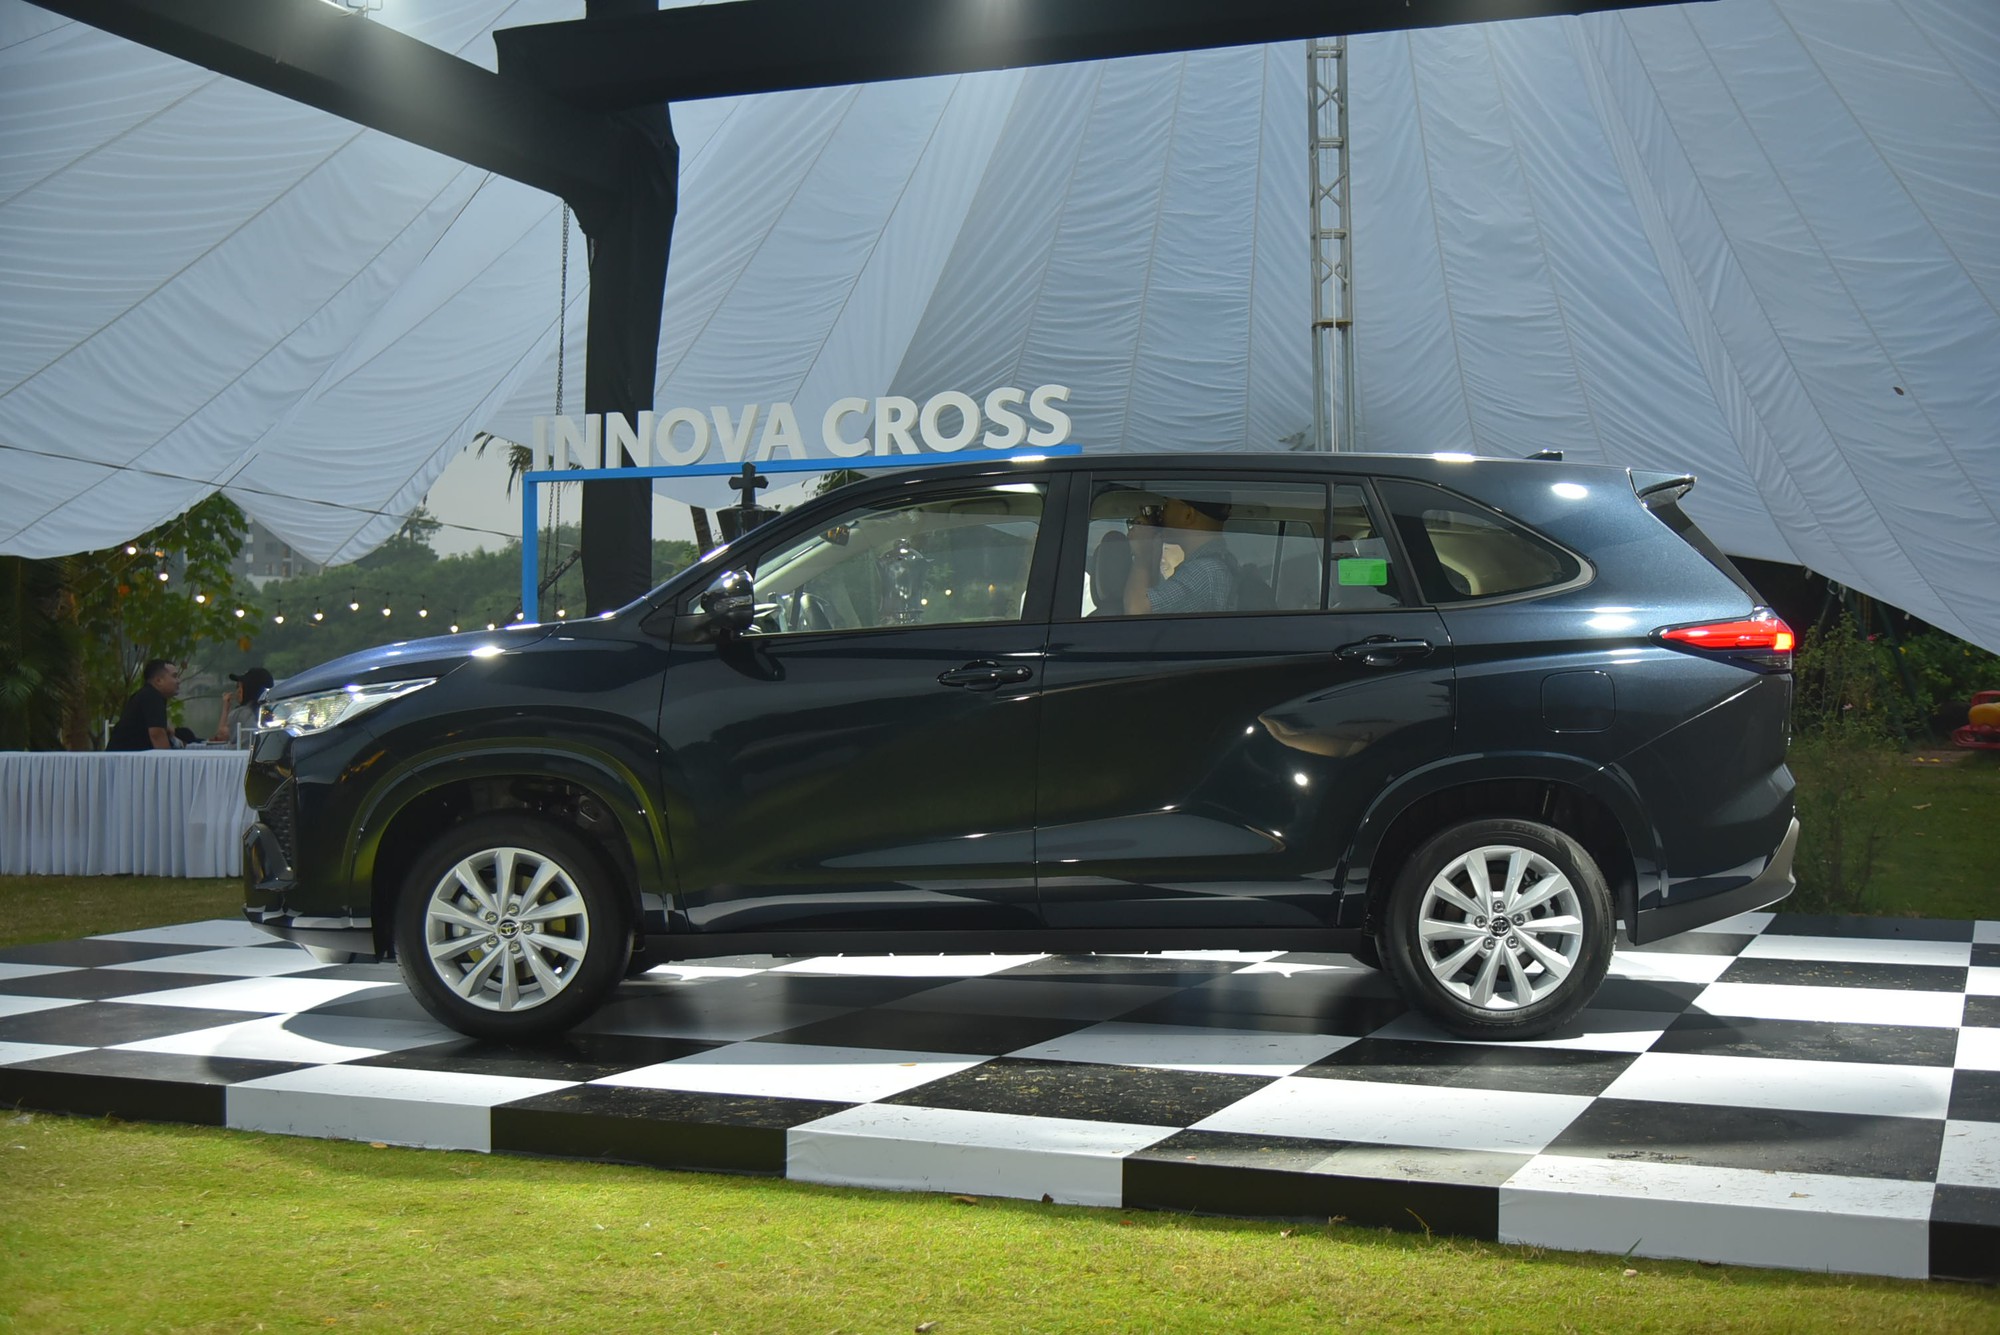 Ngồi thử Toyota Innova Cross bản xăng: Giá 810 triệu đồng, trang bị vừa miếng - Ảnh 4.